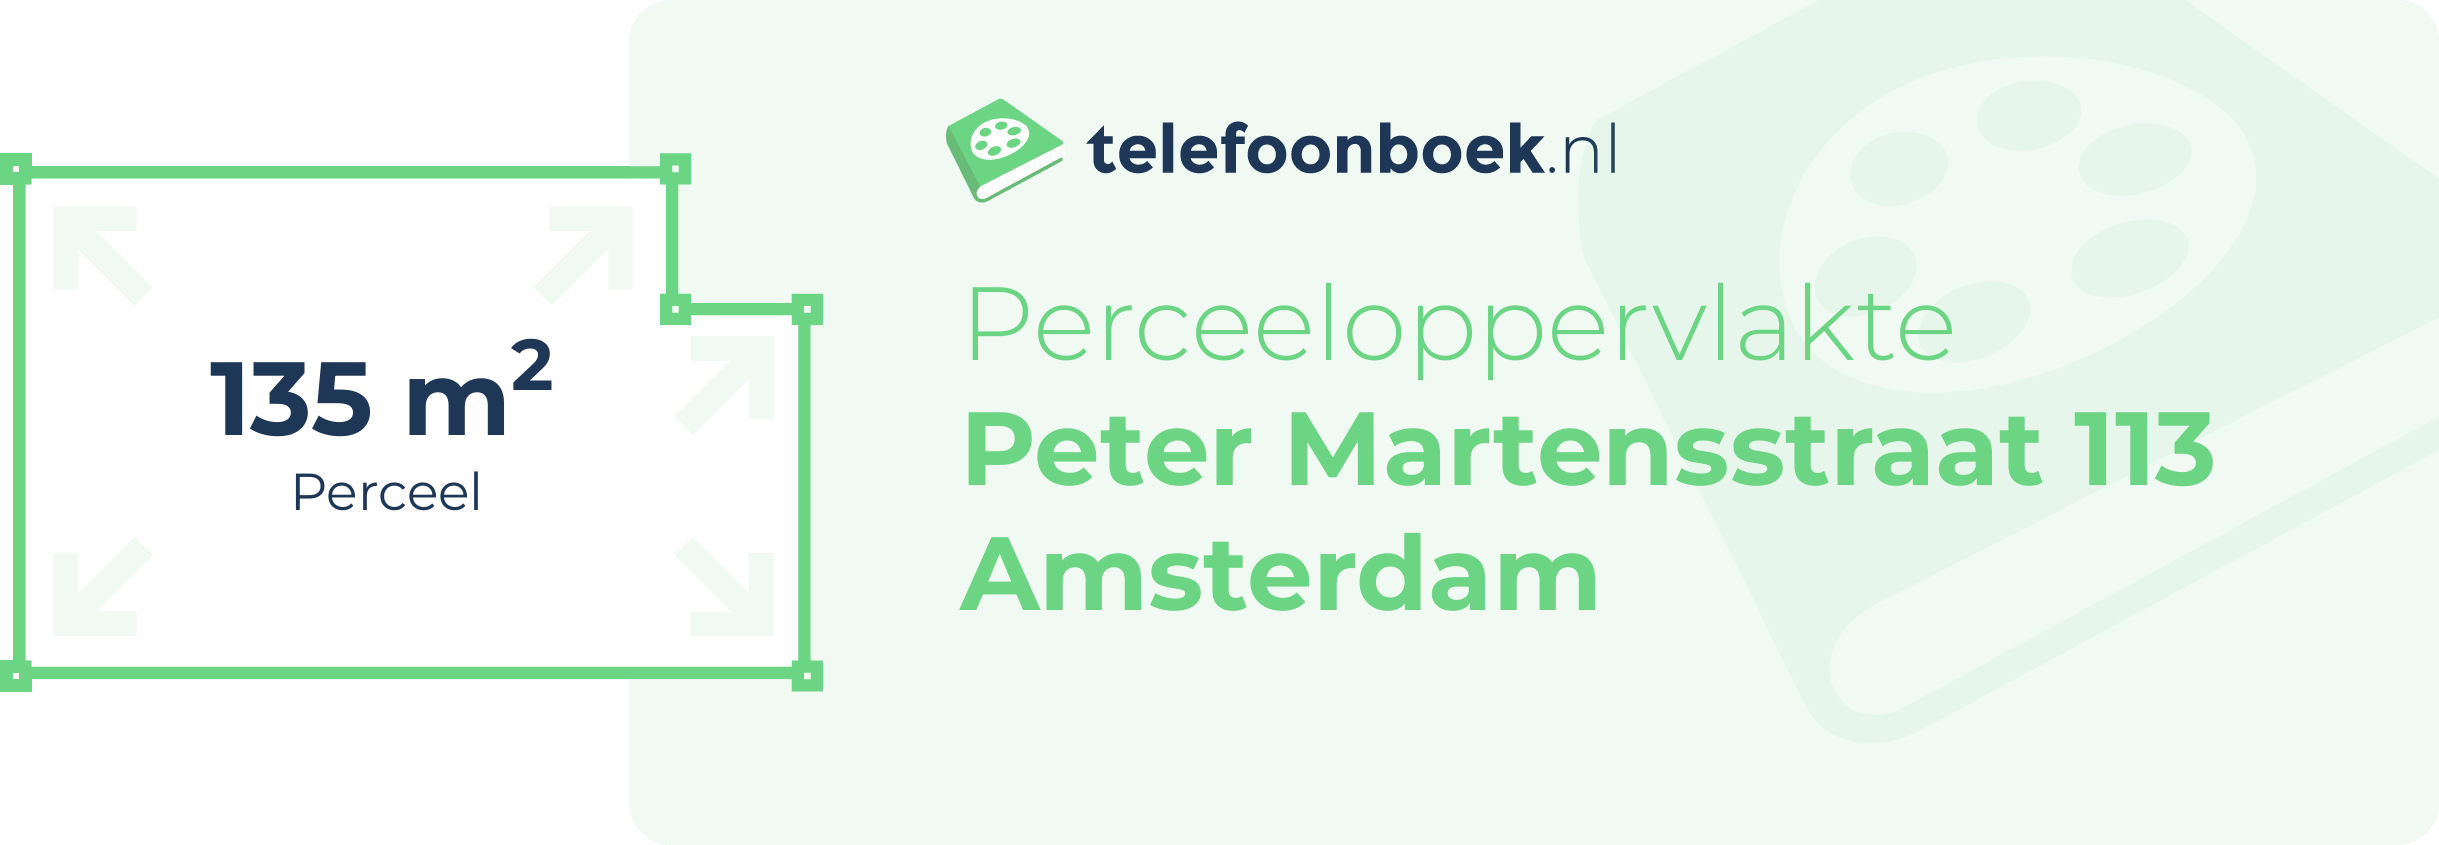 Perceeloppervlakte Peter Martensstraat 113 Amsterdam